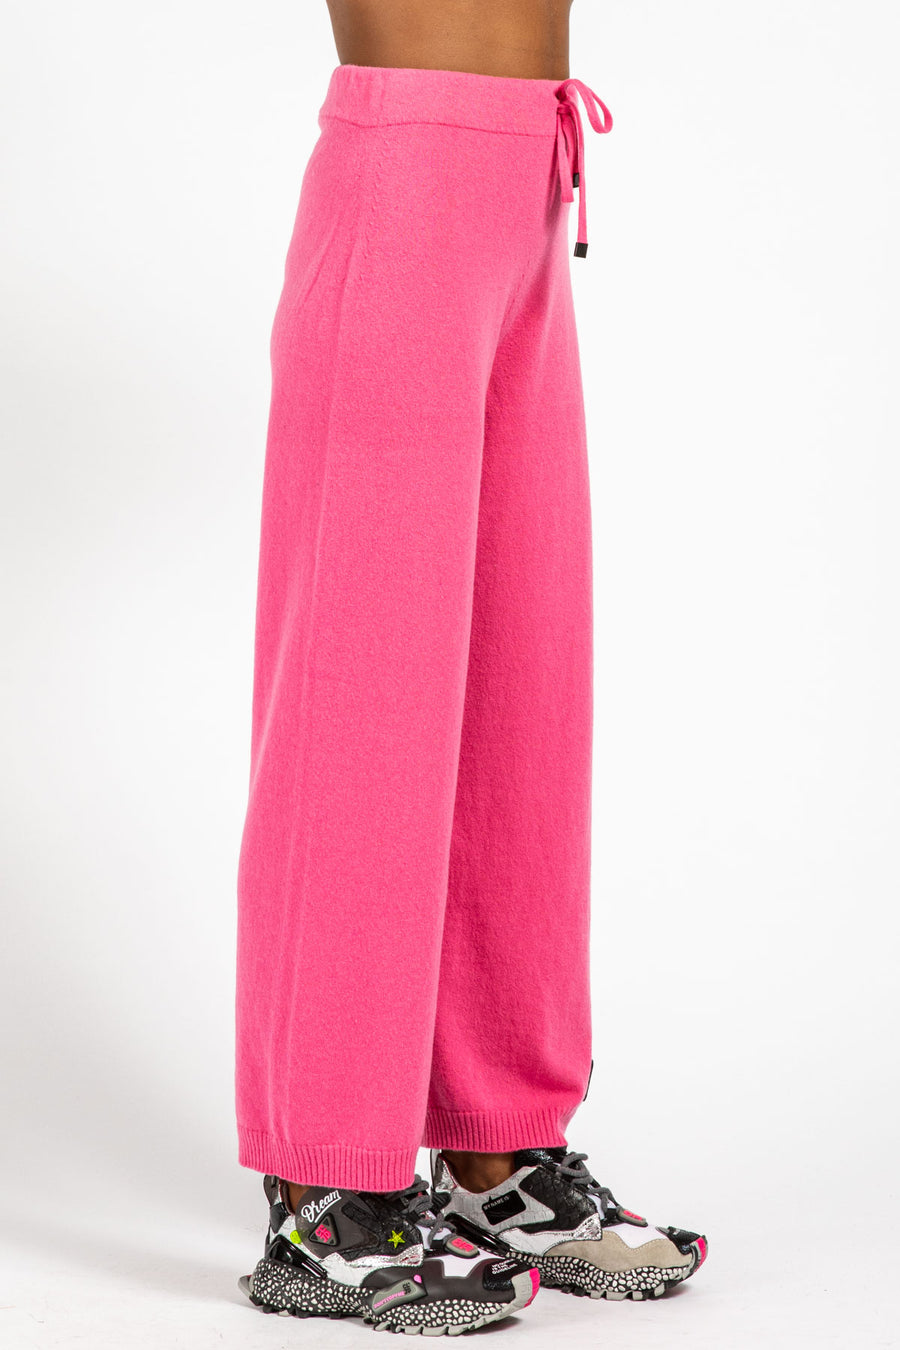 Pantalone da donna in lana e cashmere magenta wn08